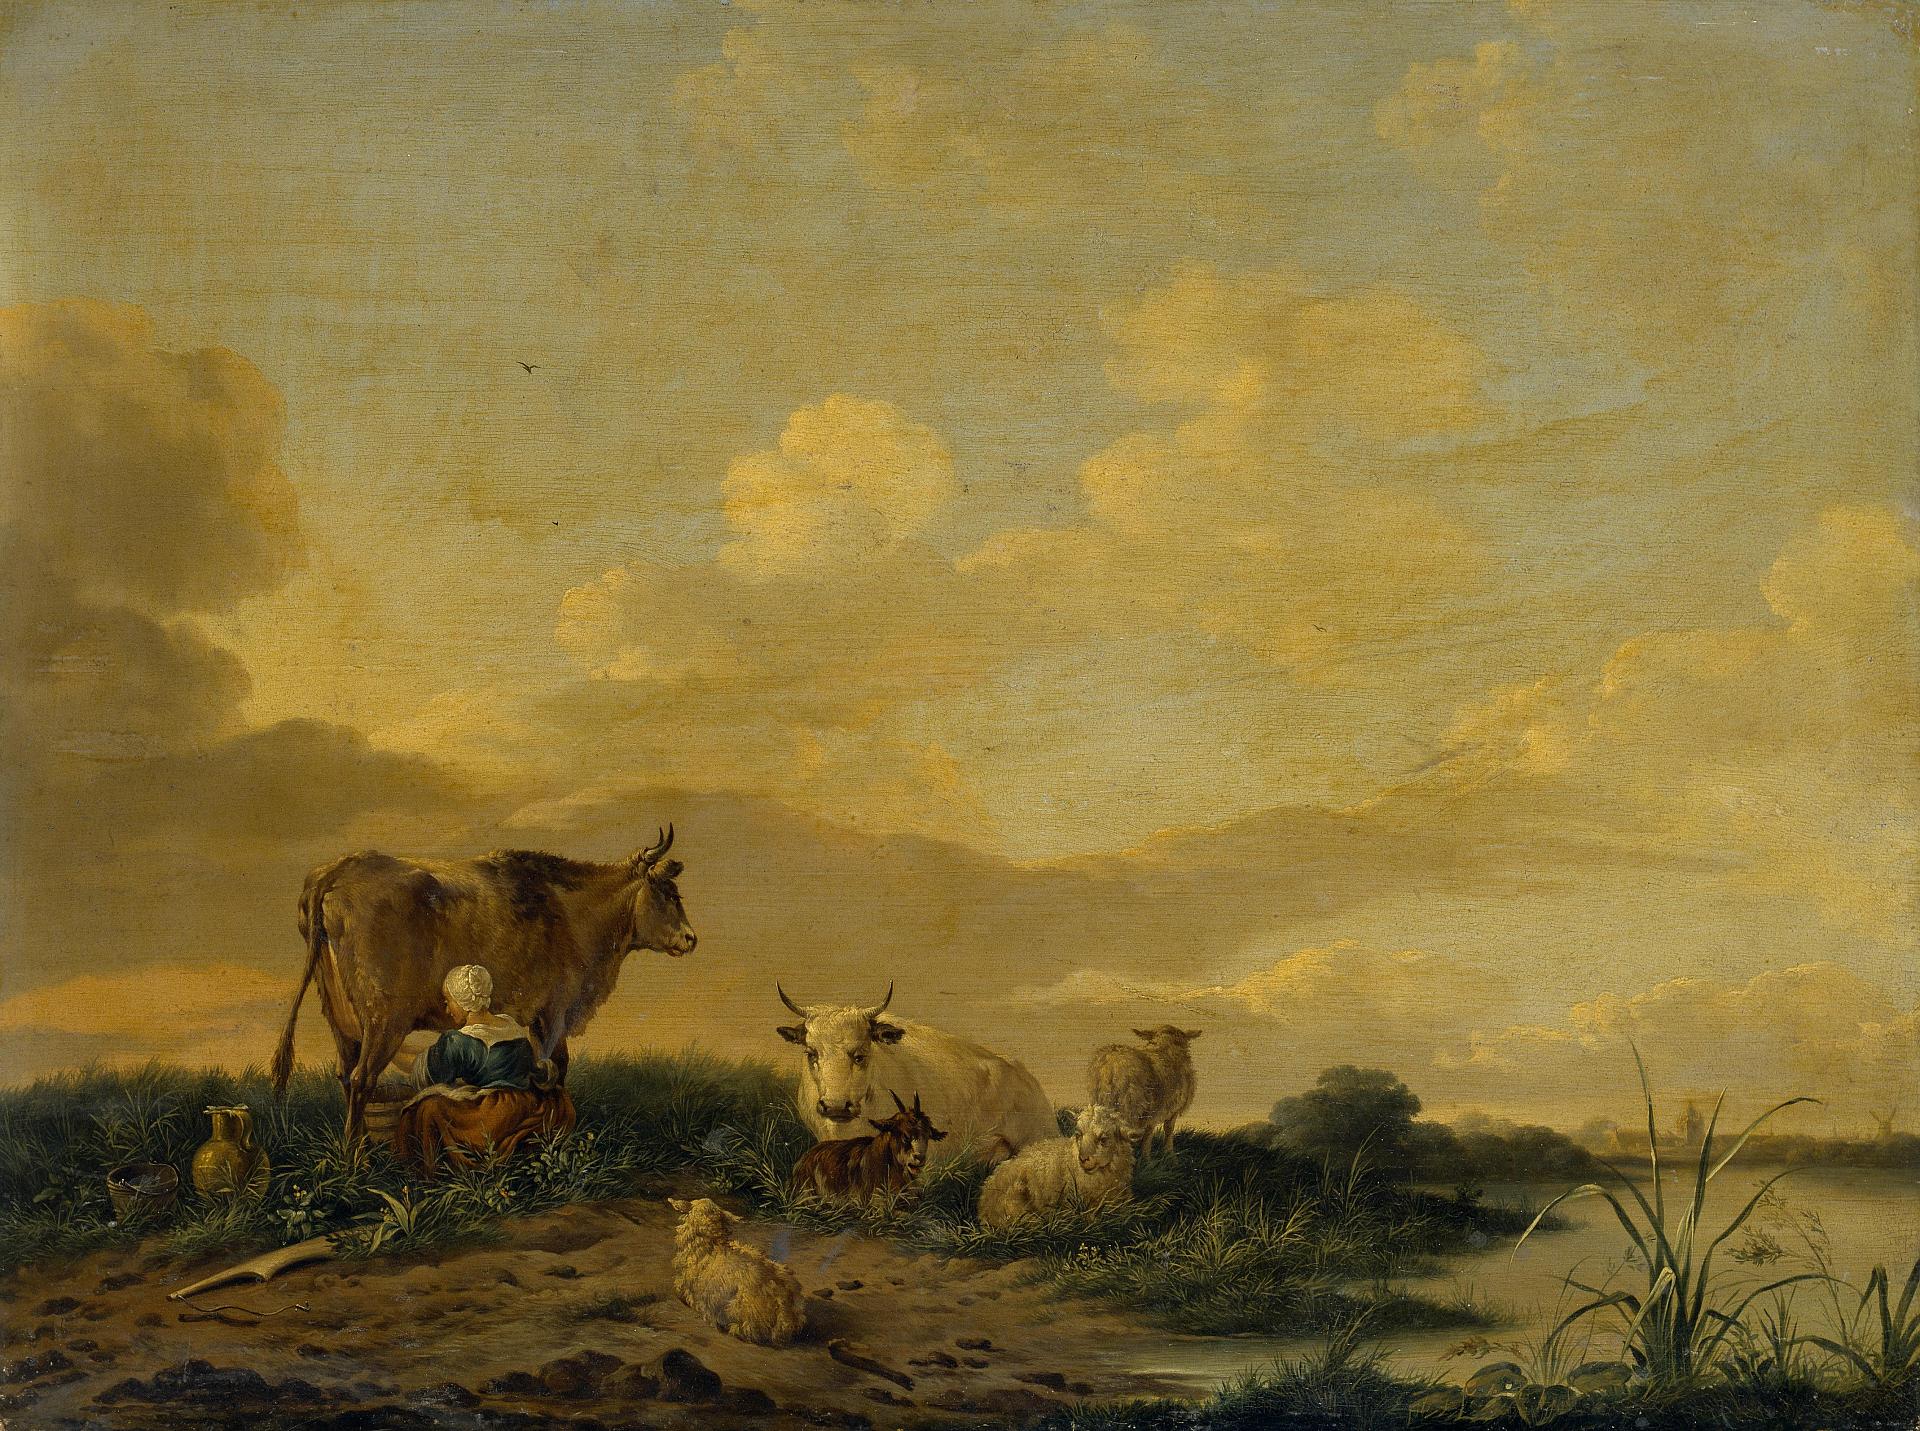 Дионис ван донген. "Пейзаж с коровами и овцами". XVII век.